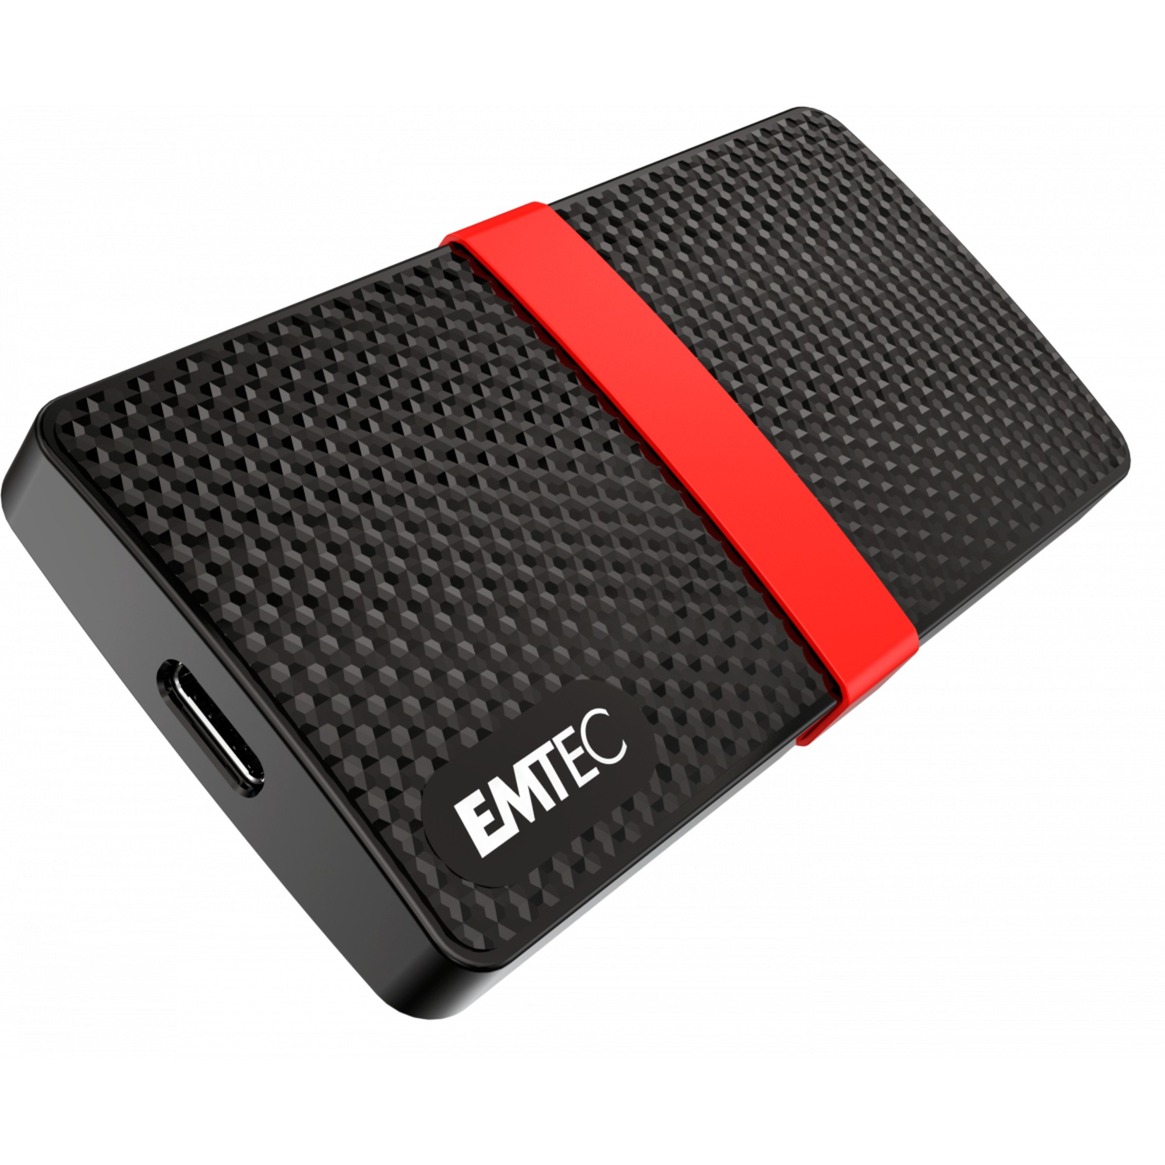 Image of Alternate - X200 Portable SSD 1 TB, Externe SSD online einkaufen bei Alternate